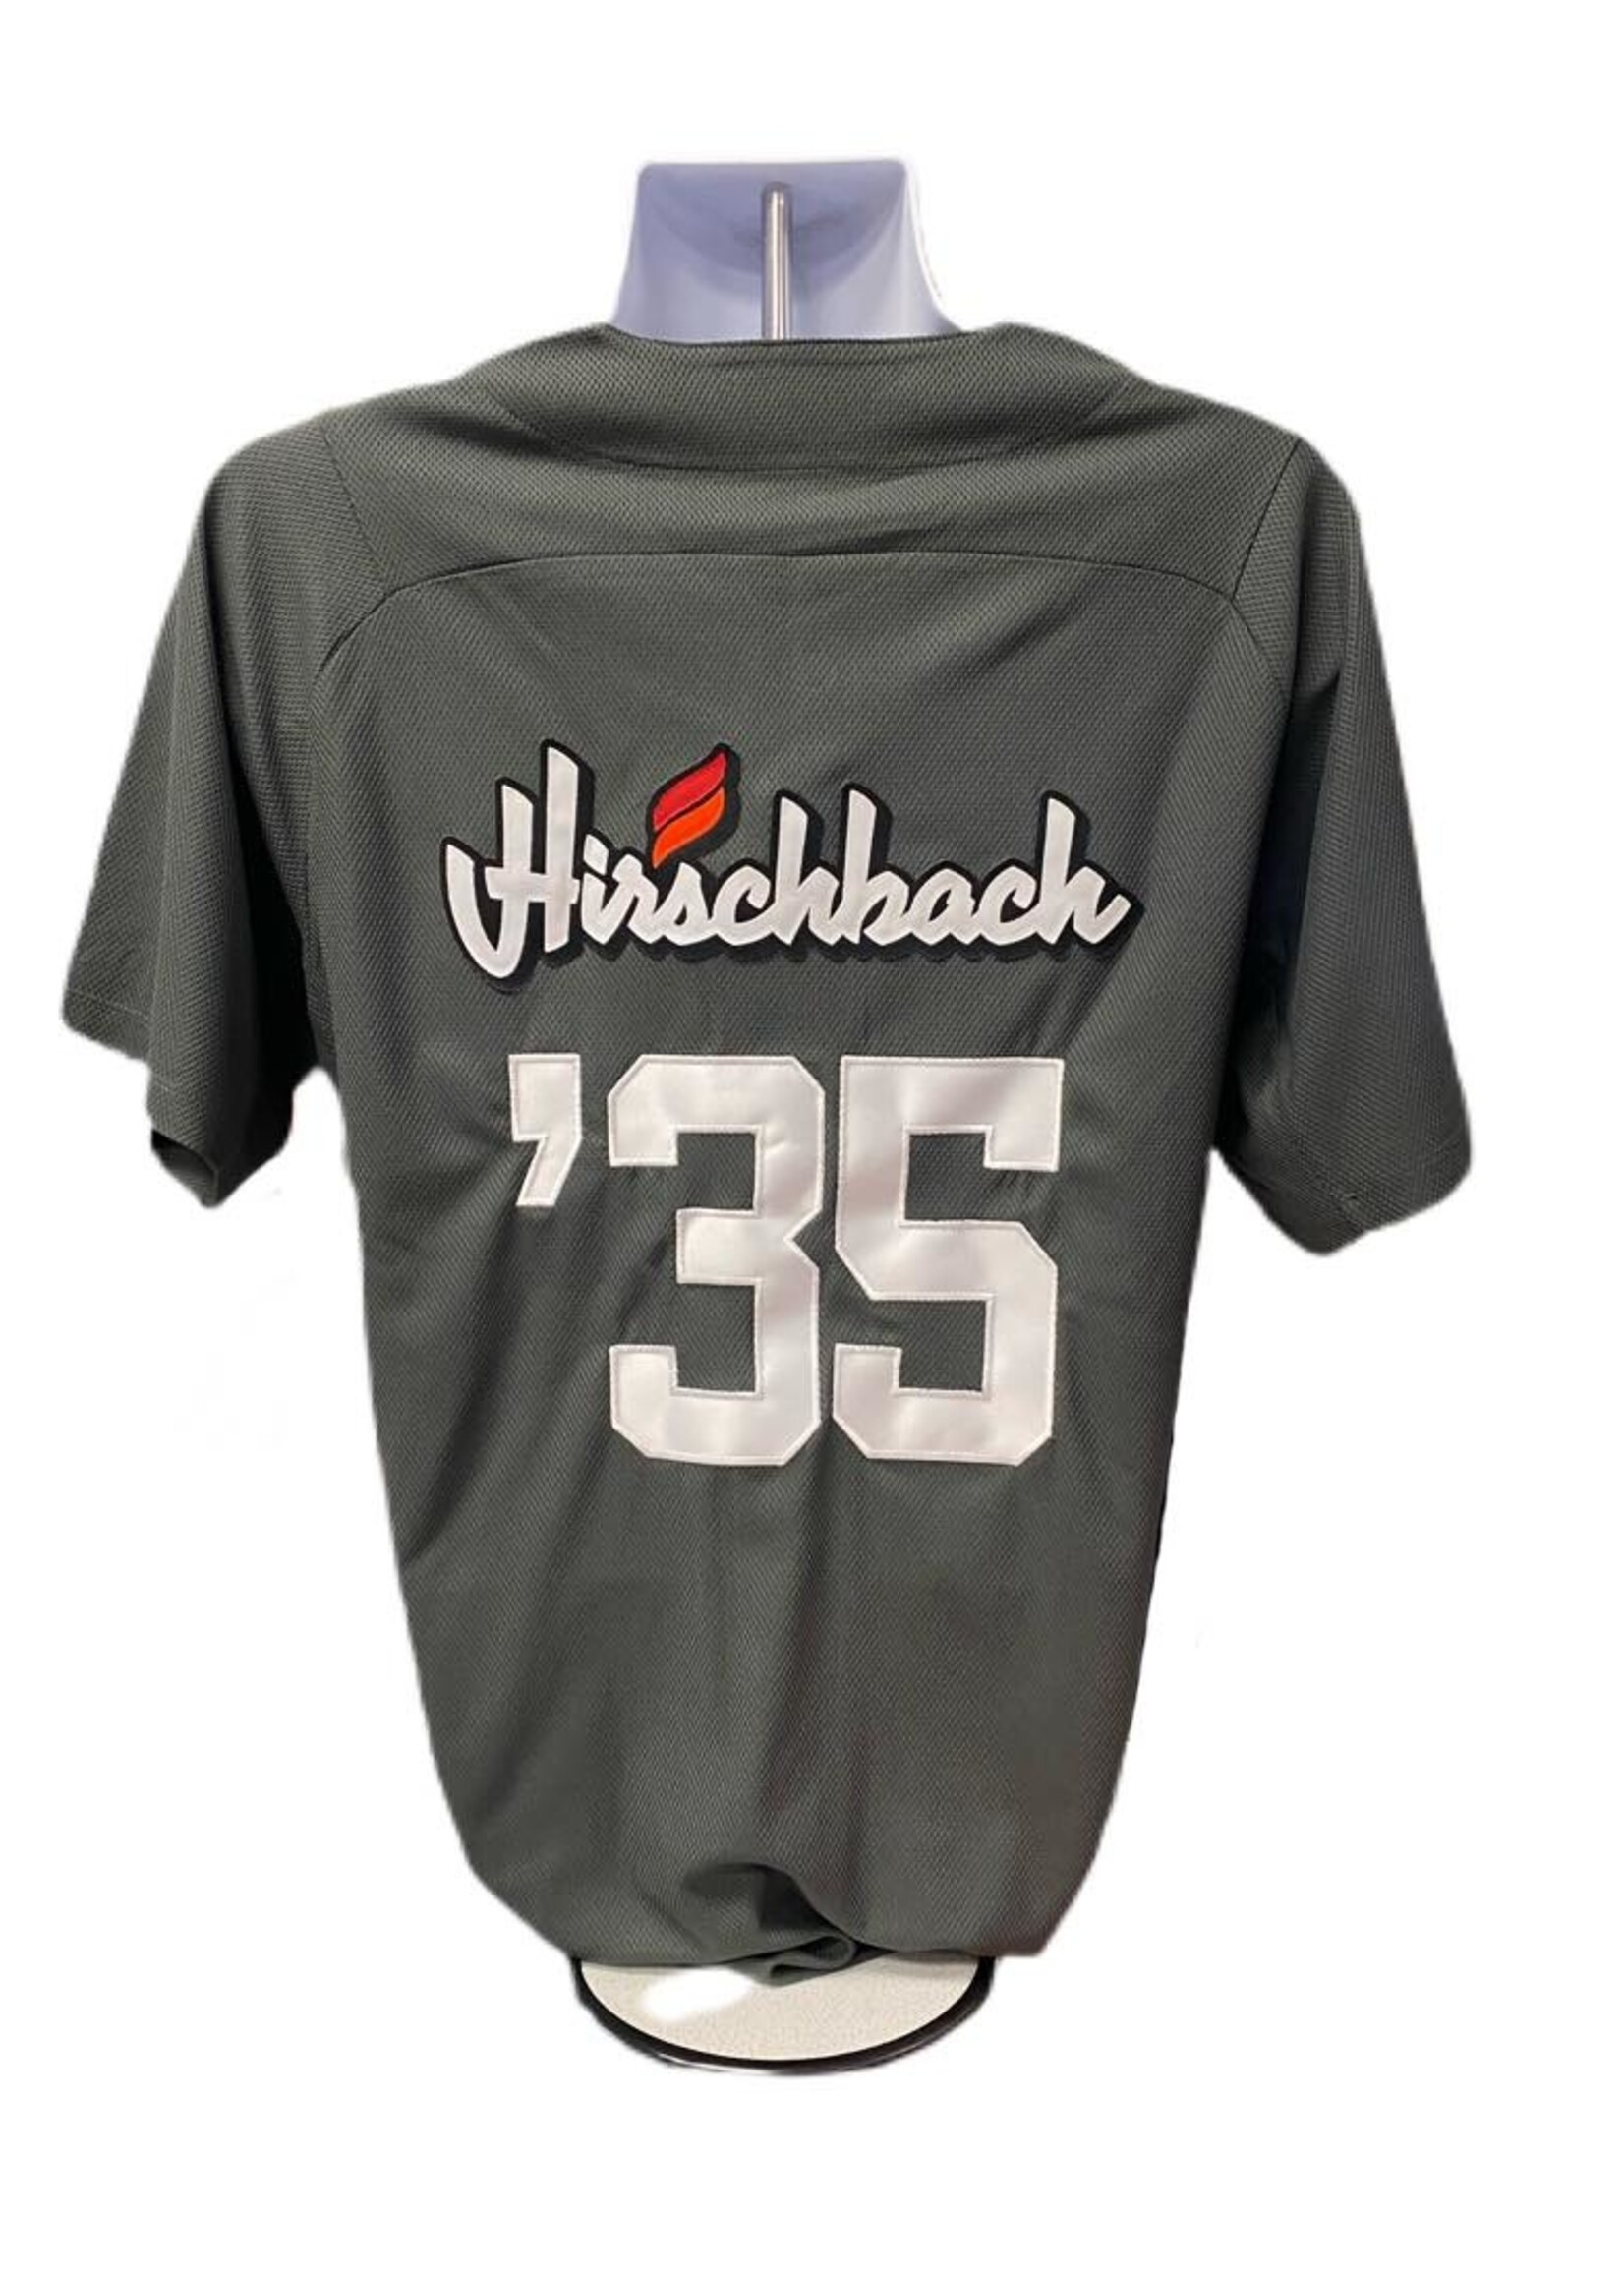 Hirschbach Baseball Jersey